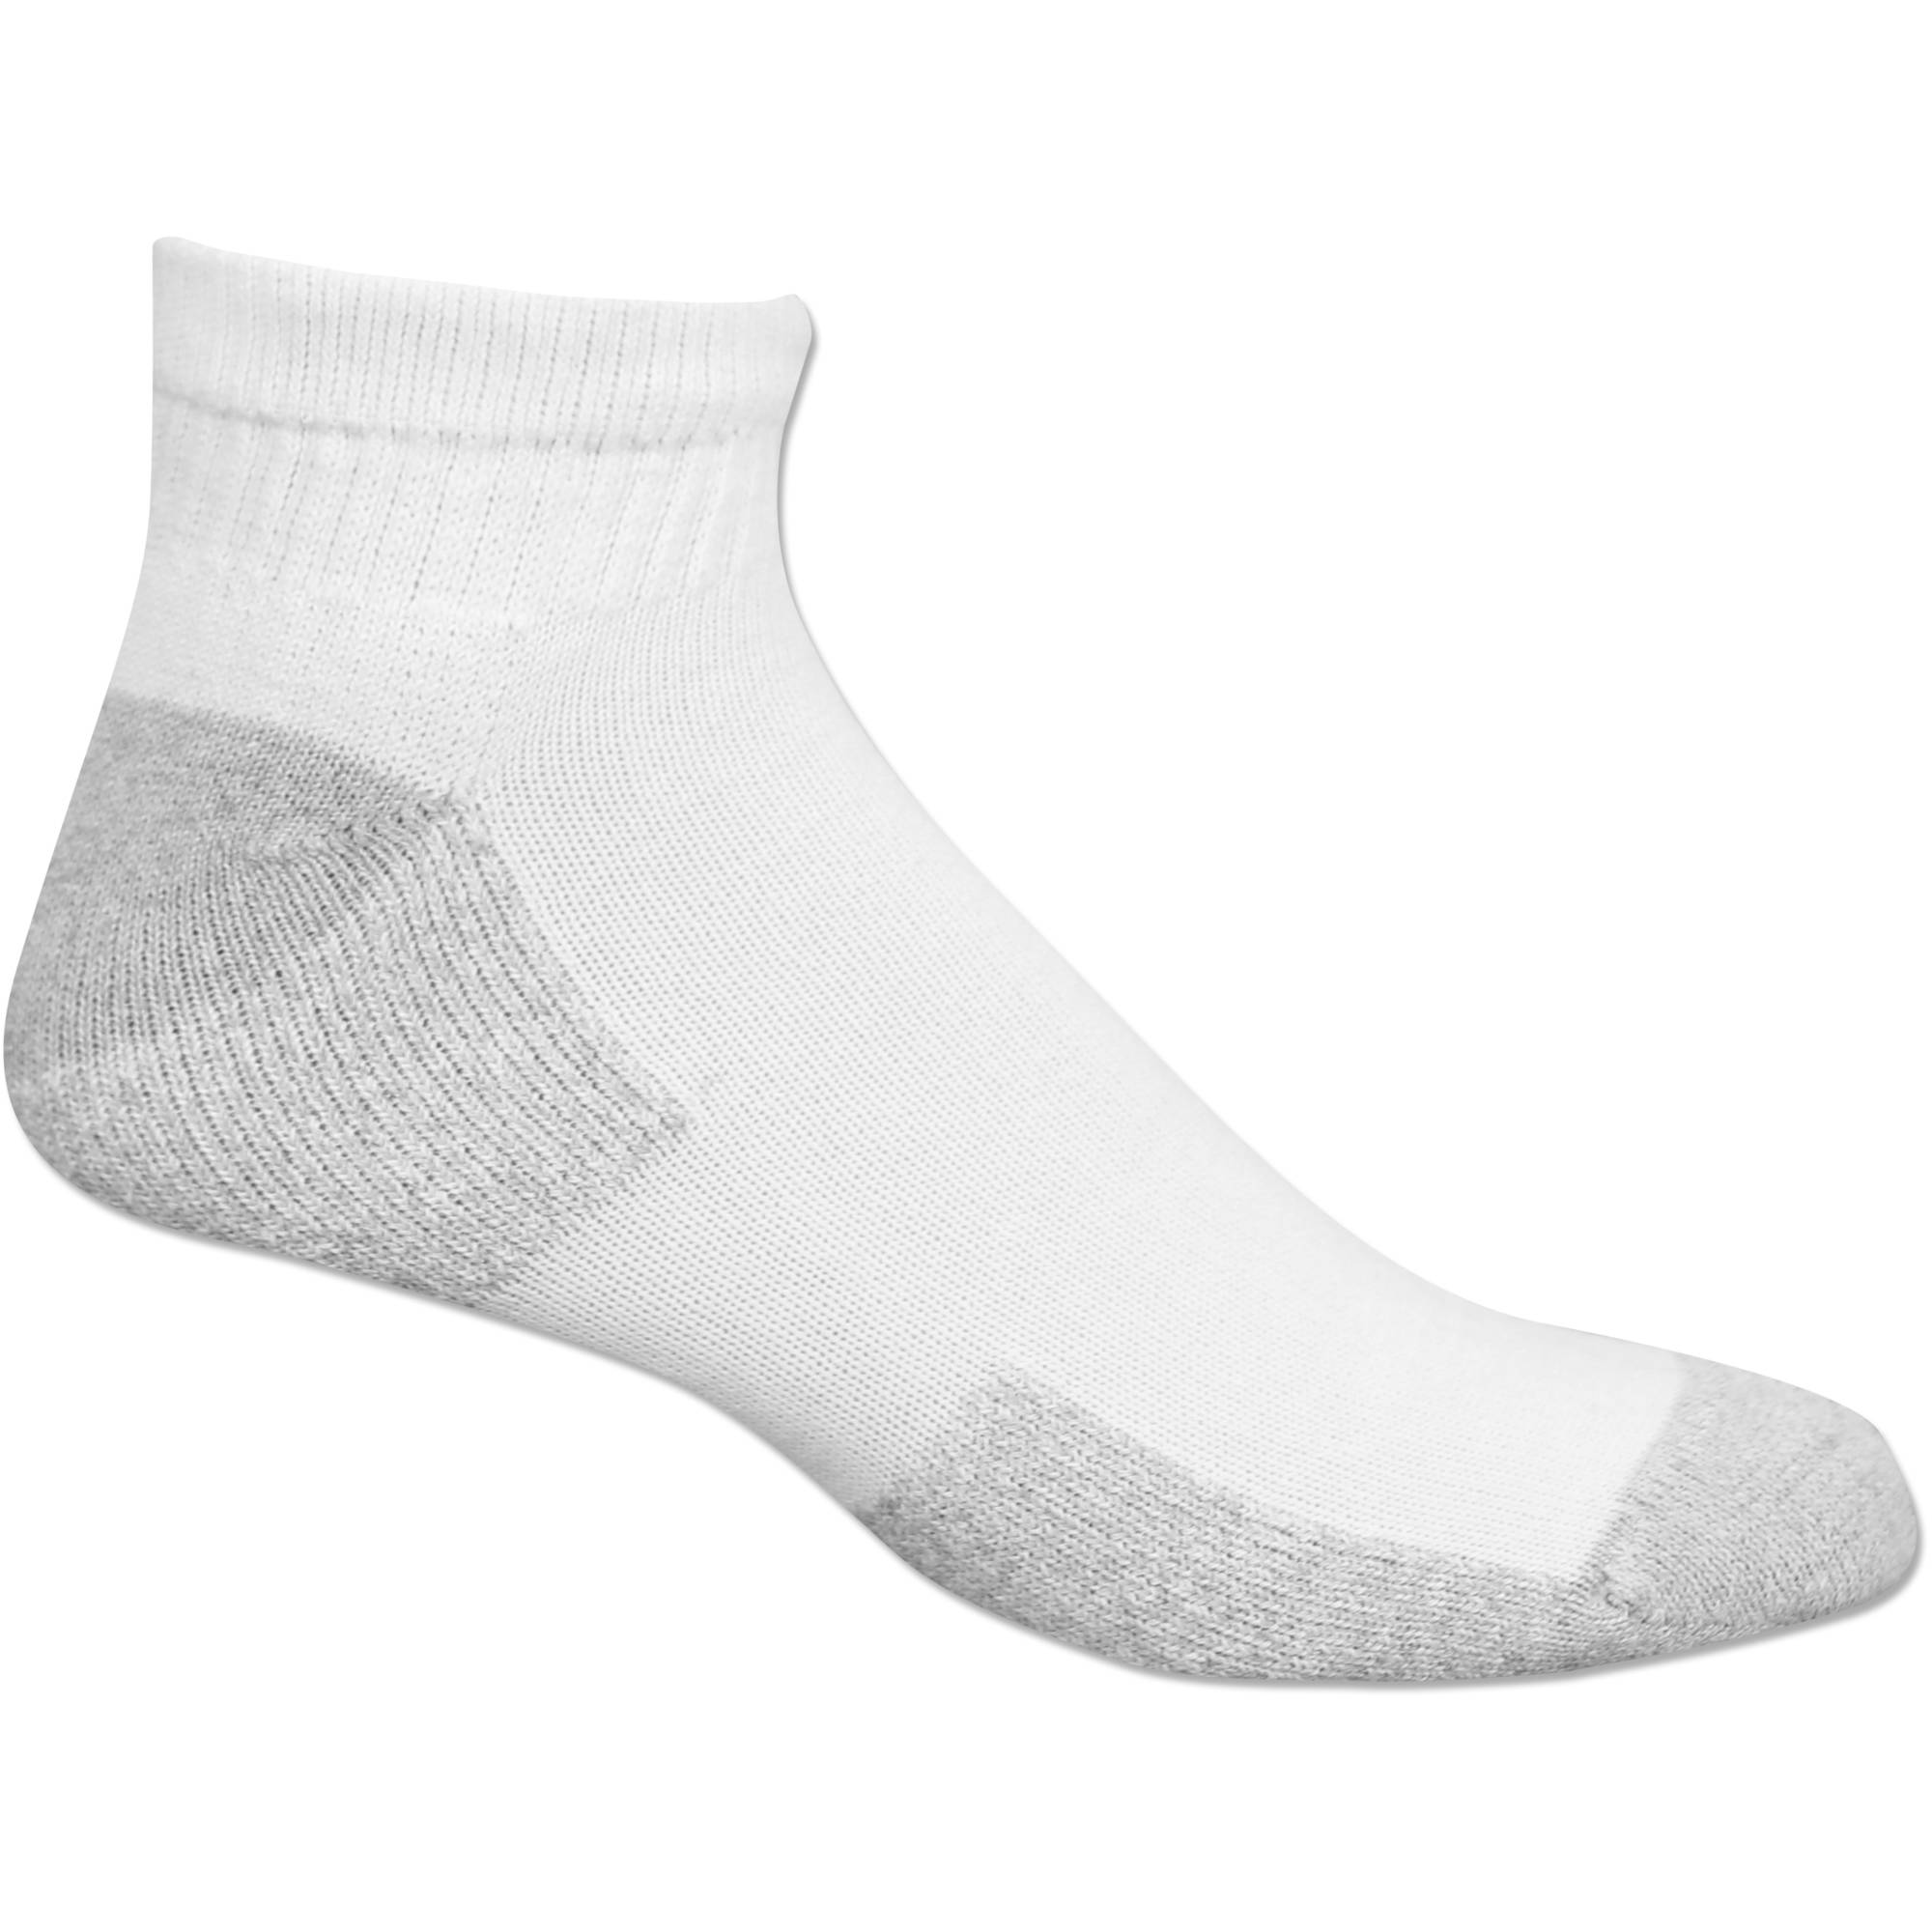 Mens Big & Tall Ankle Socks 10 Pack - Walmart.com